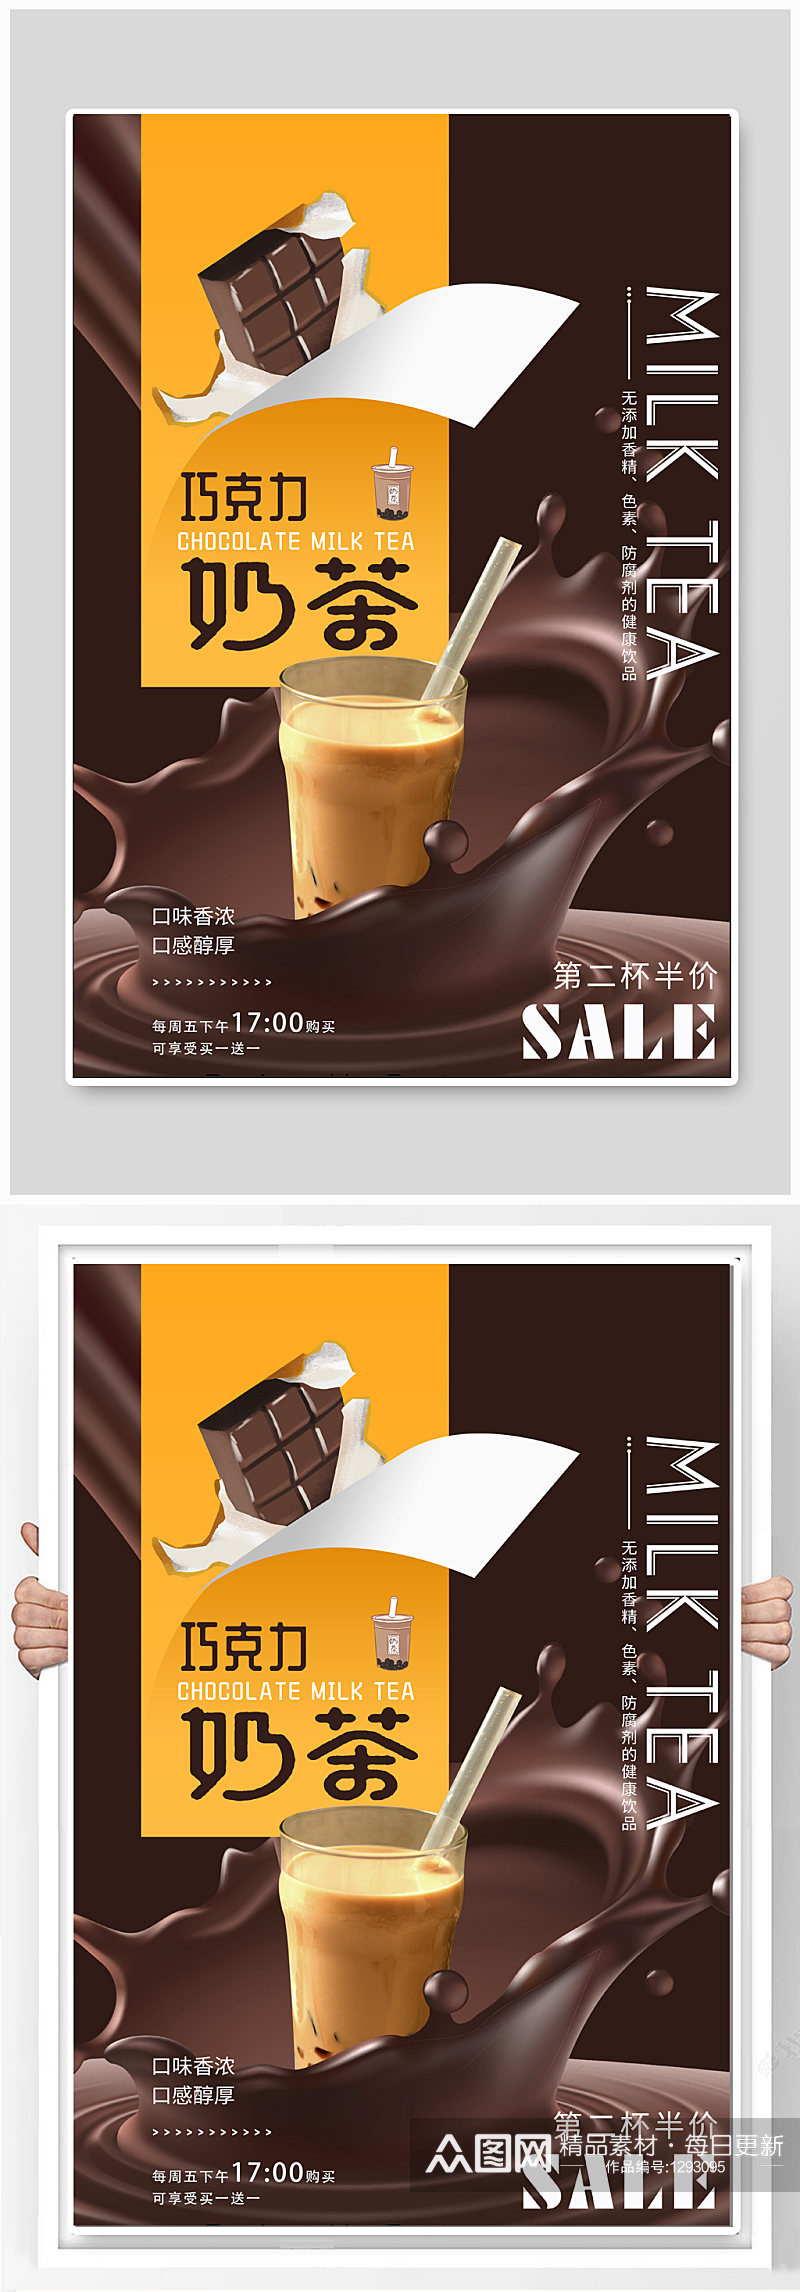 巧克力奶茶饮品宣传海报素材